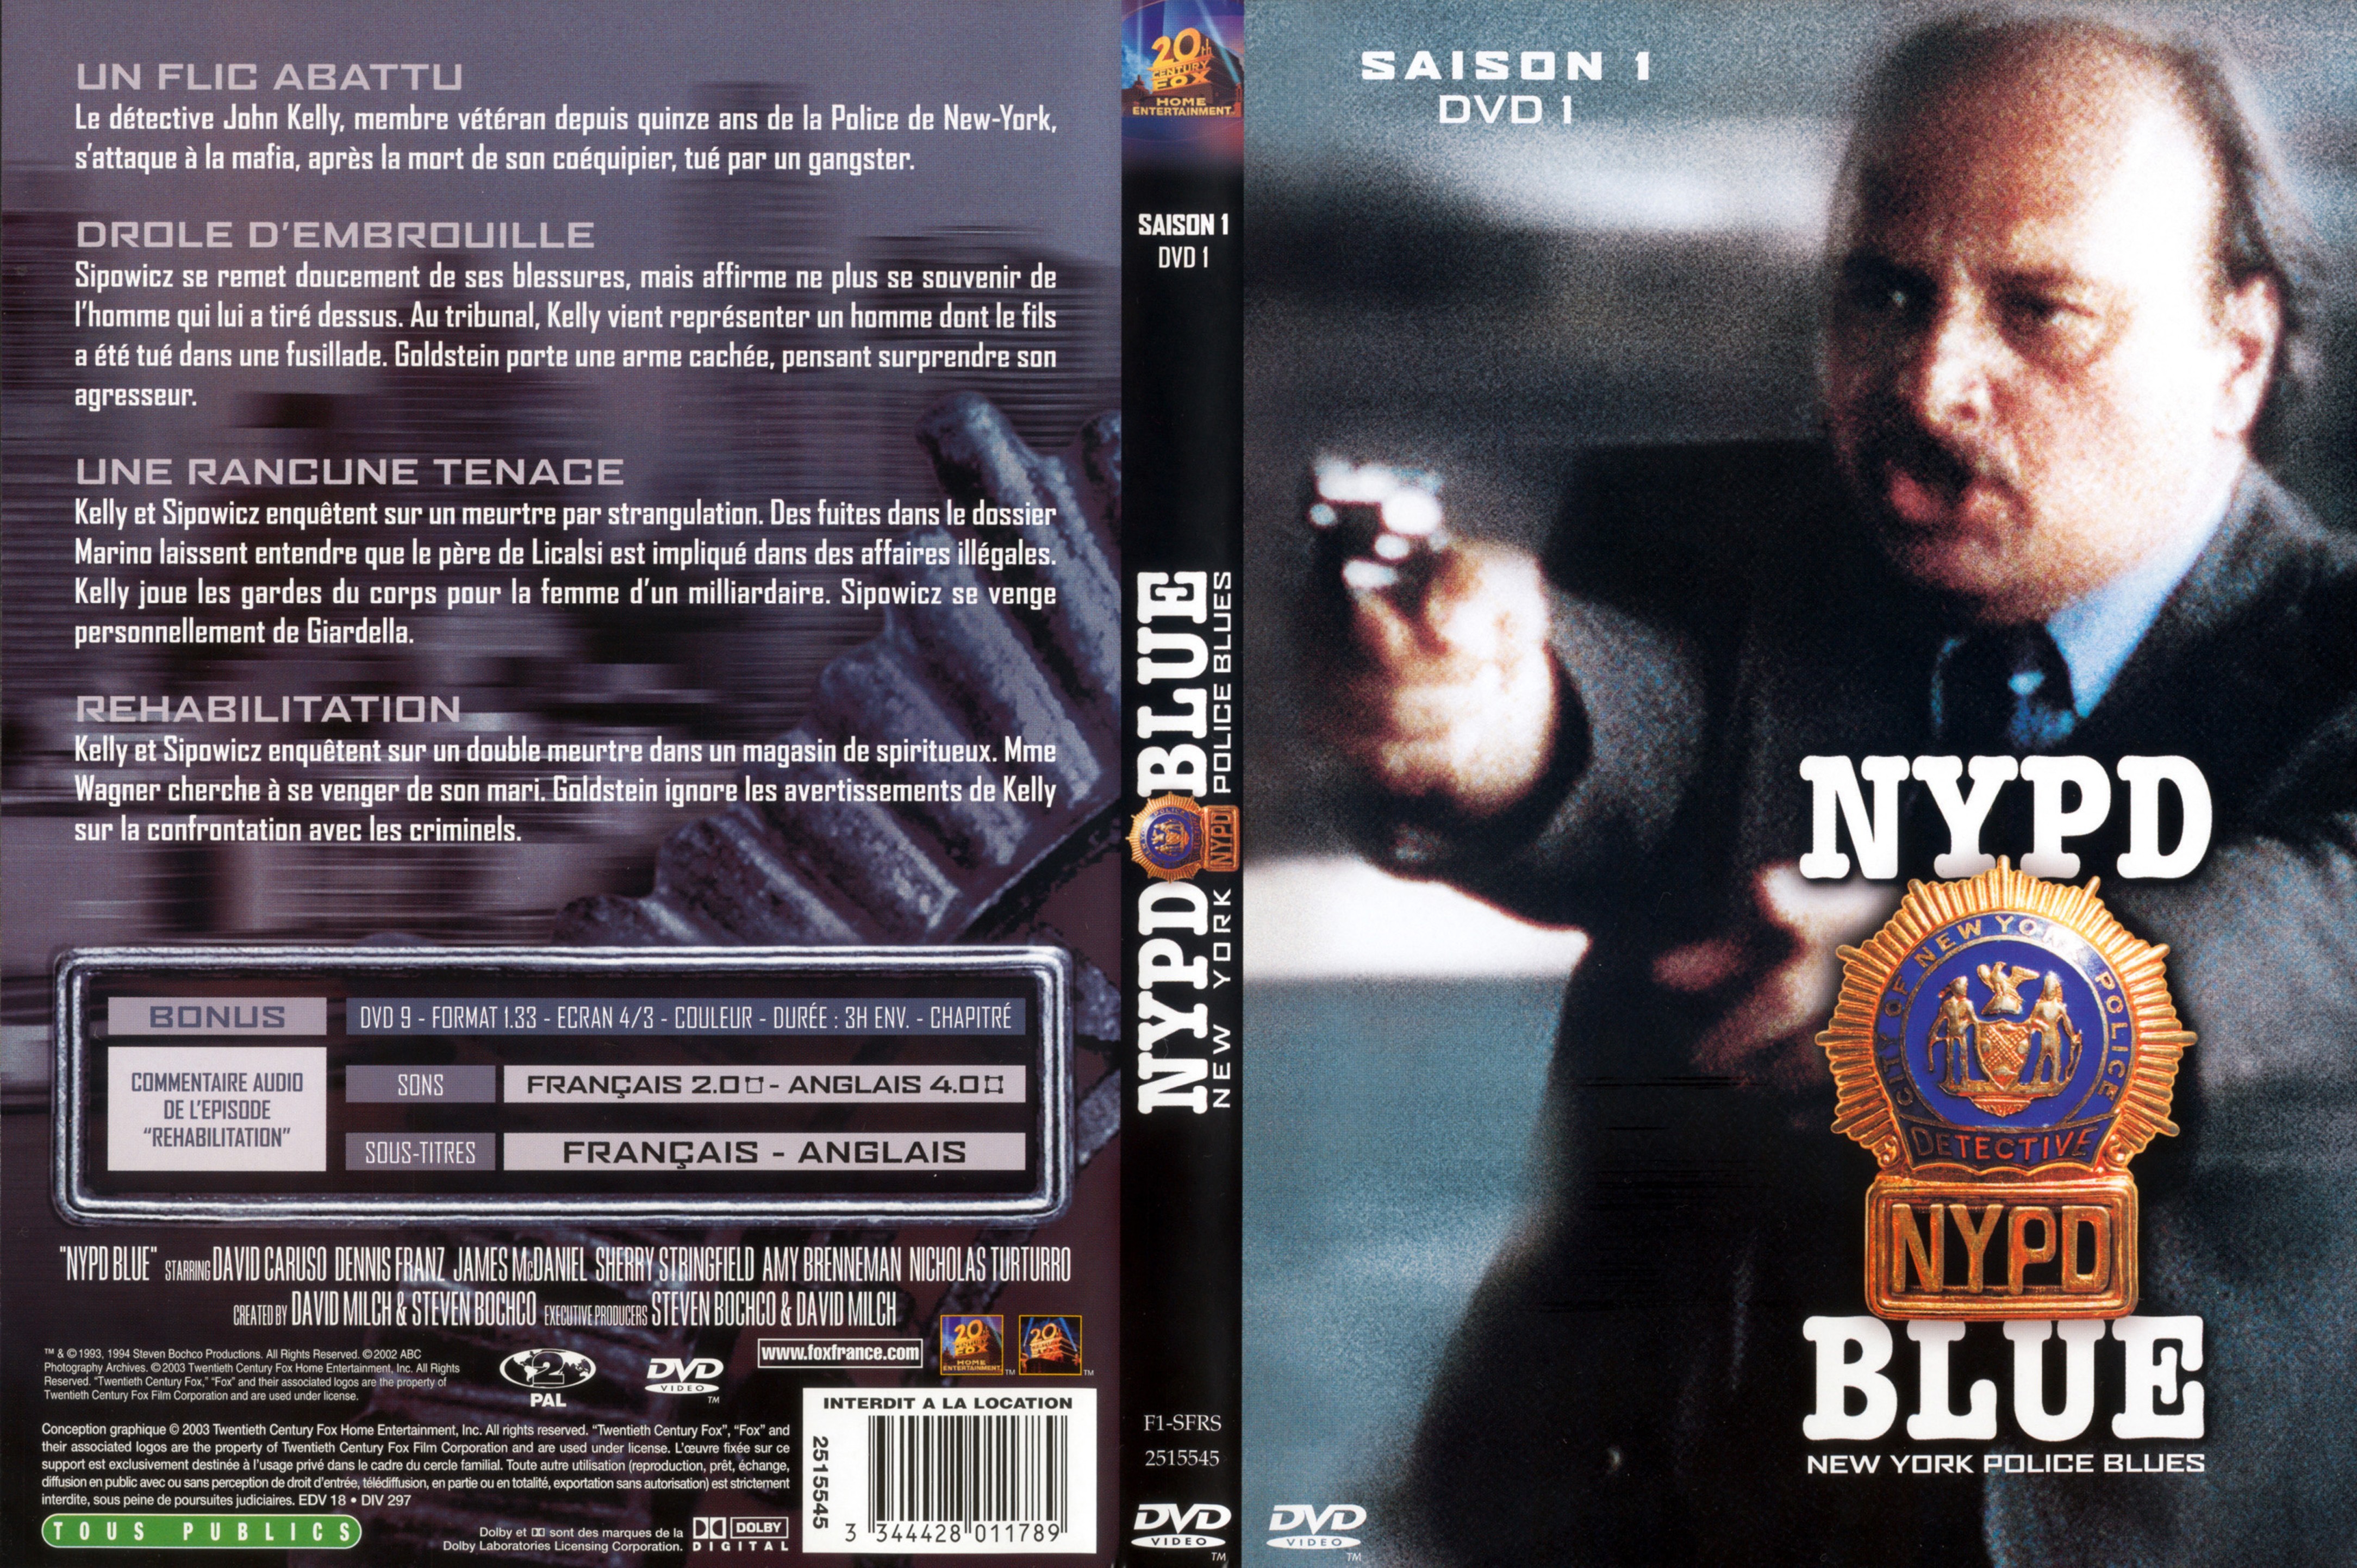 Jaquette DVD NYPD Blue saison 01 dvd 01